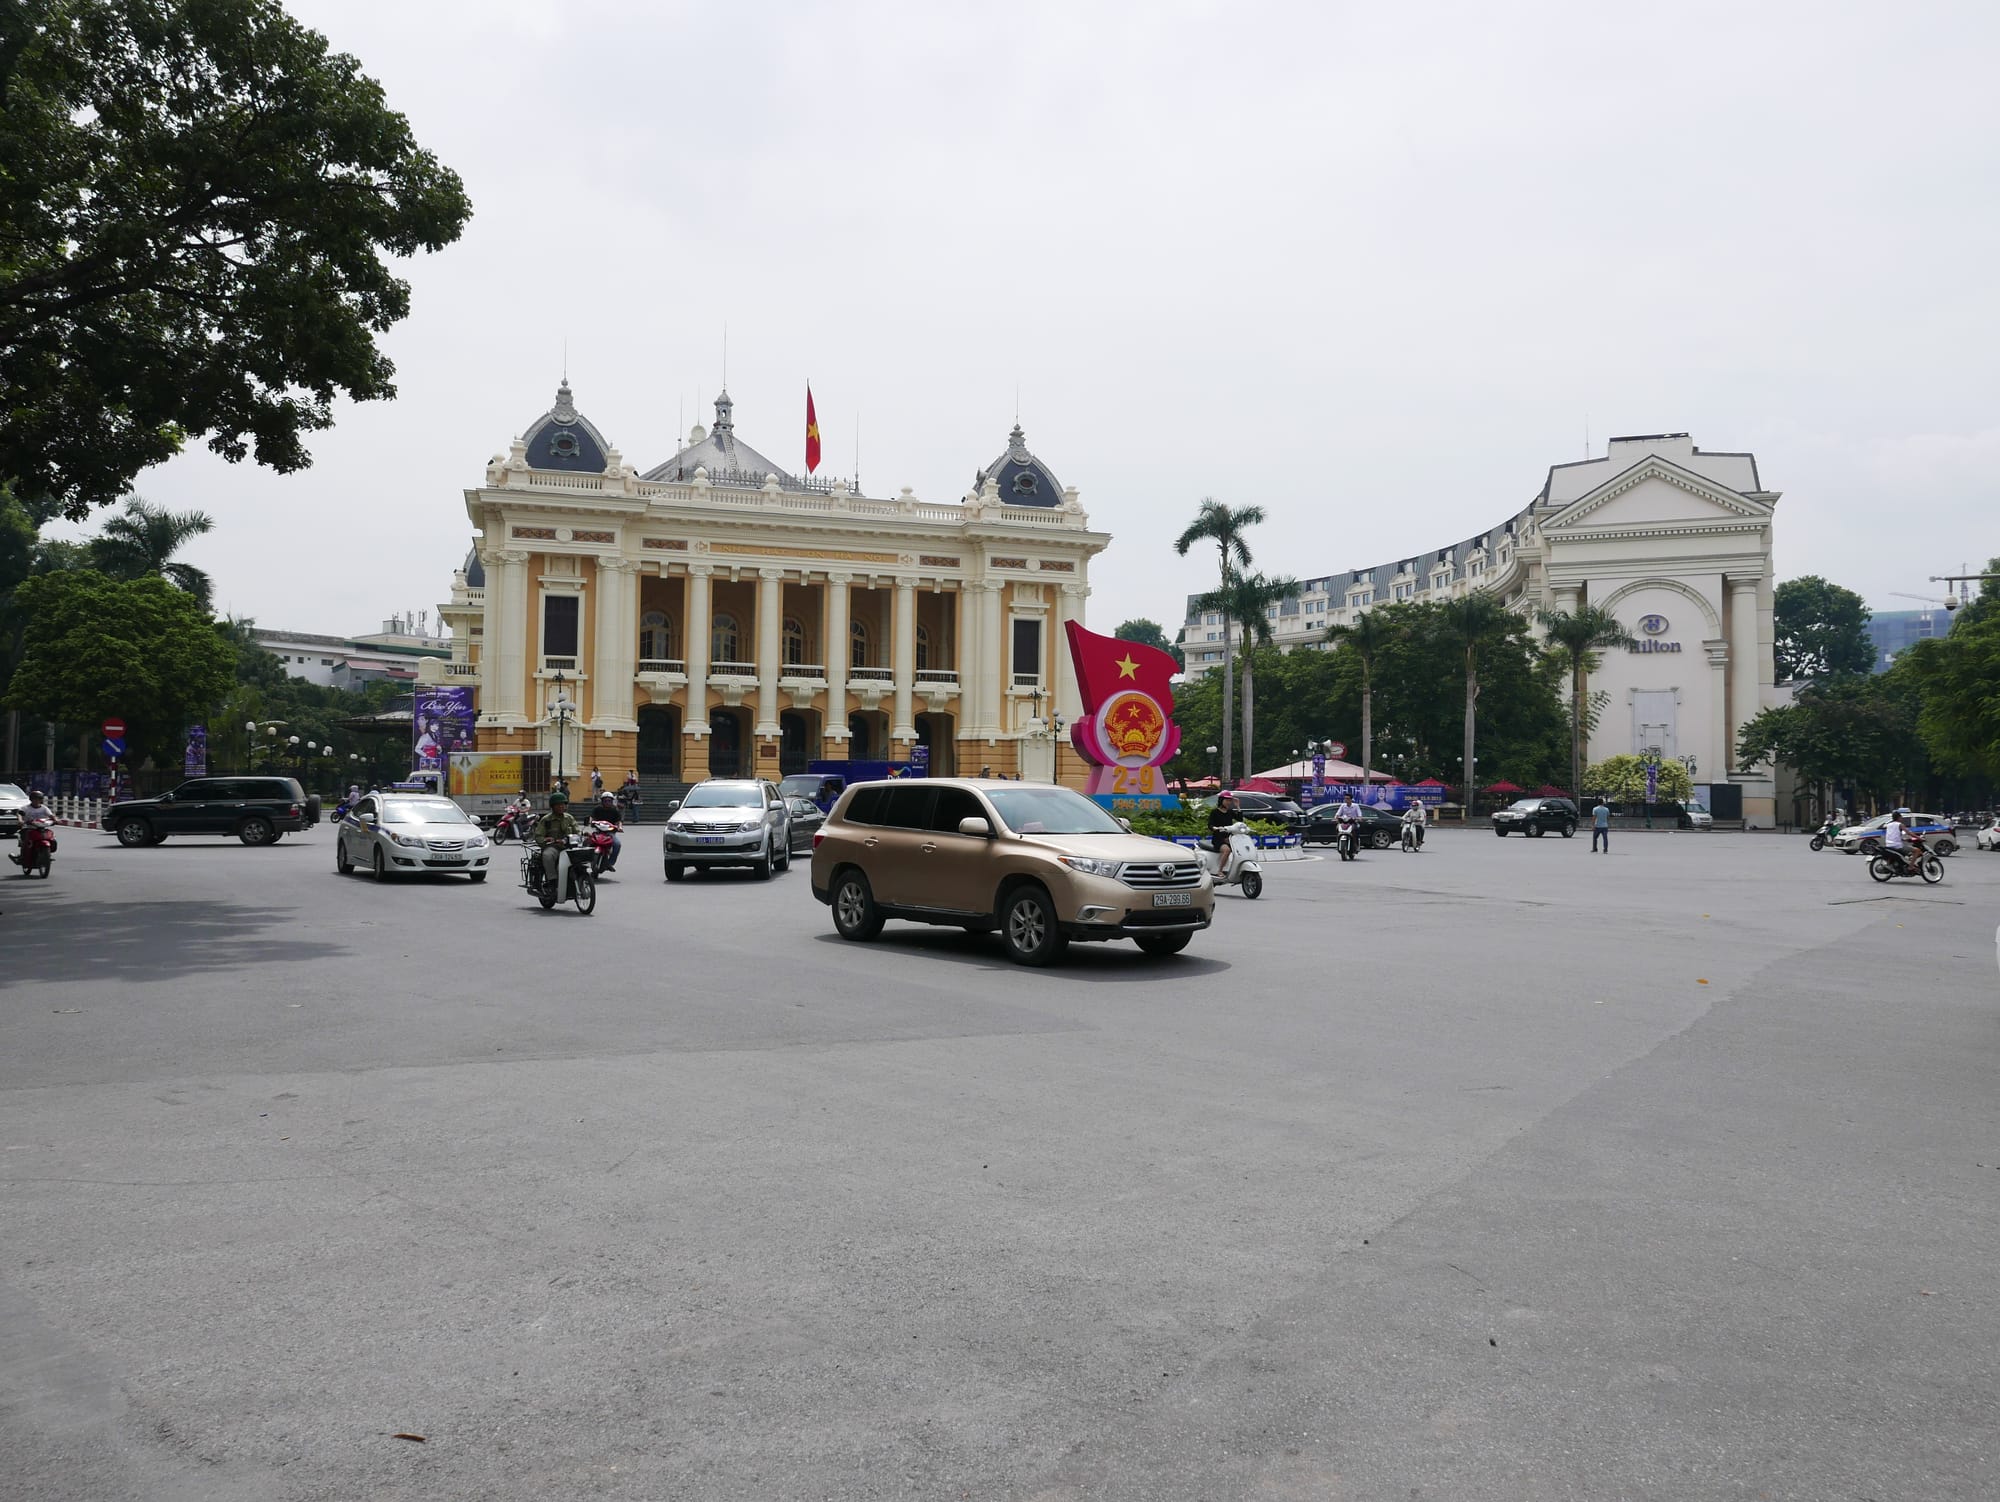 Photo by Author — Nhà Hát Lớn Hà Nội (Hanoi Opera House), 1 Tràng Tiền, Hoàn Kiếm, Thành Phố Hà Nội, Hanoi, Vietnam